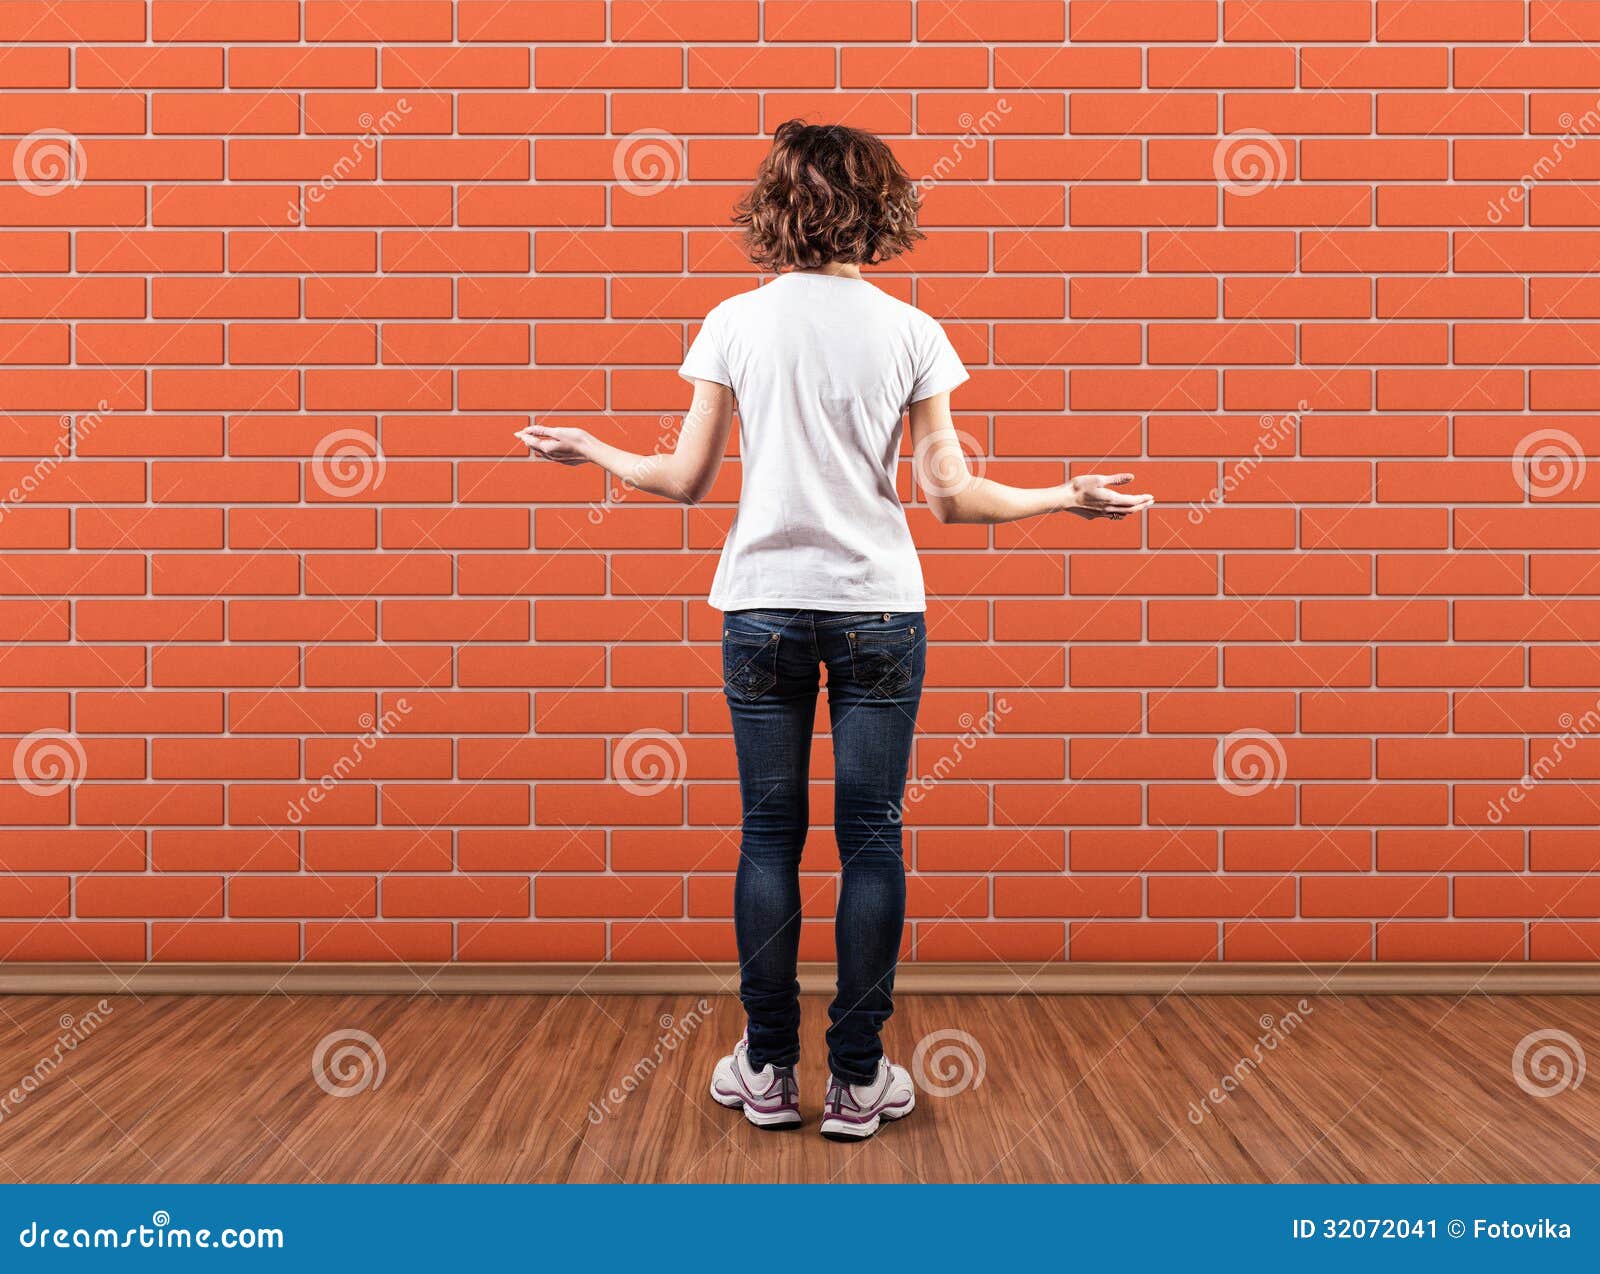 Но я буду стоять стеной. Человек перед стеной. Человек уперся в стену. Лицом к стене. Рука упирается в стену.